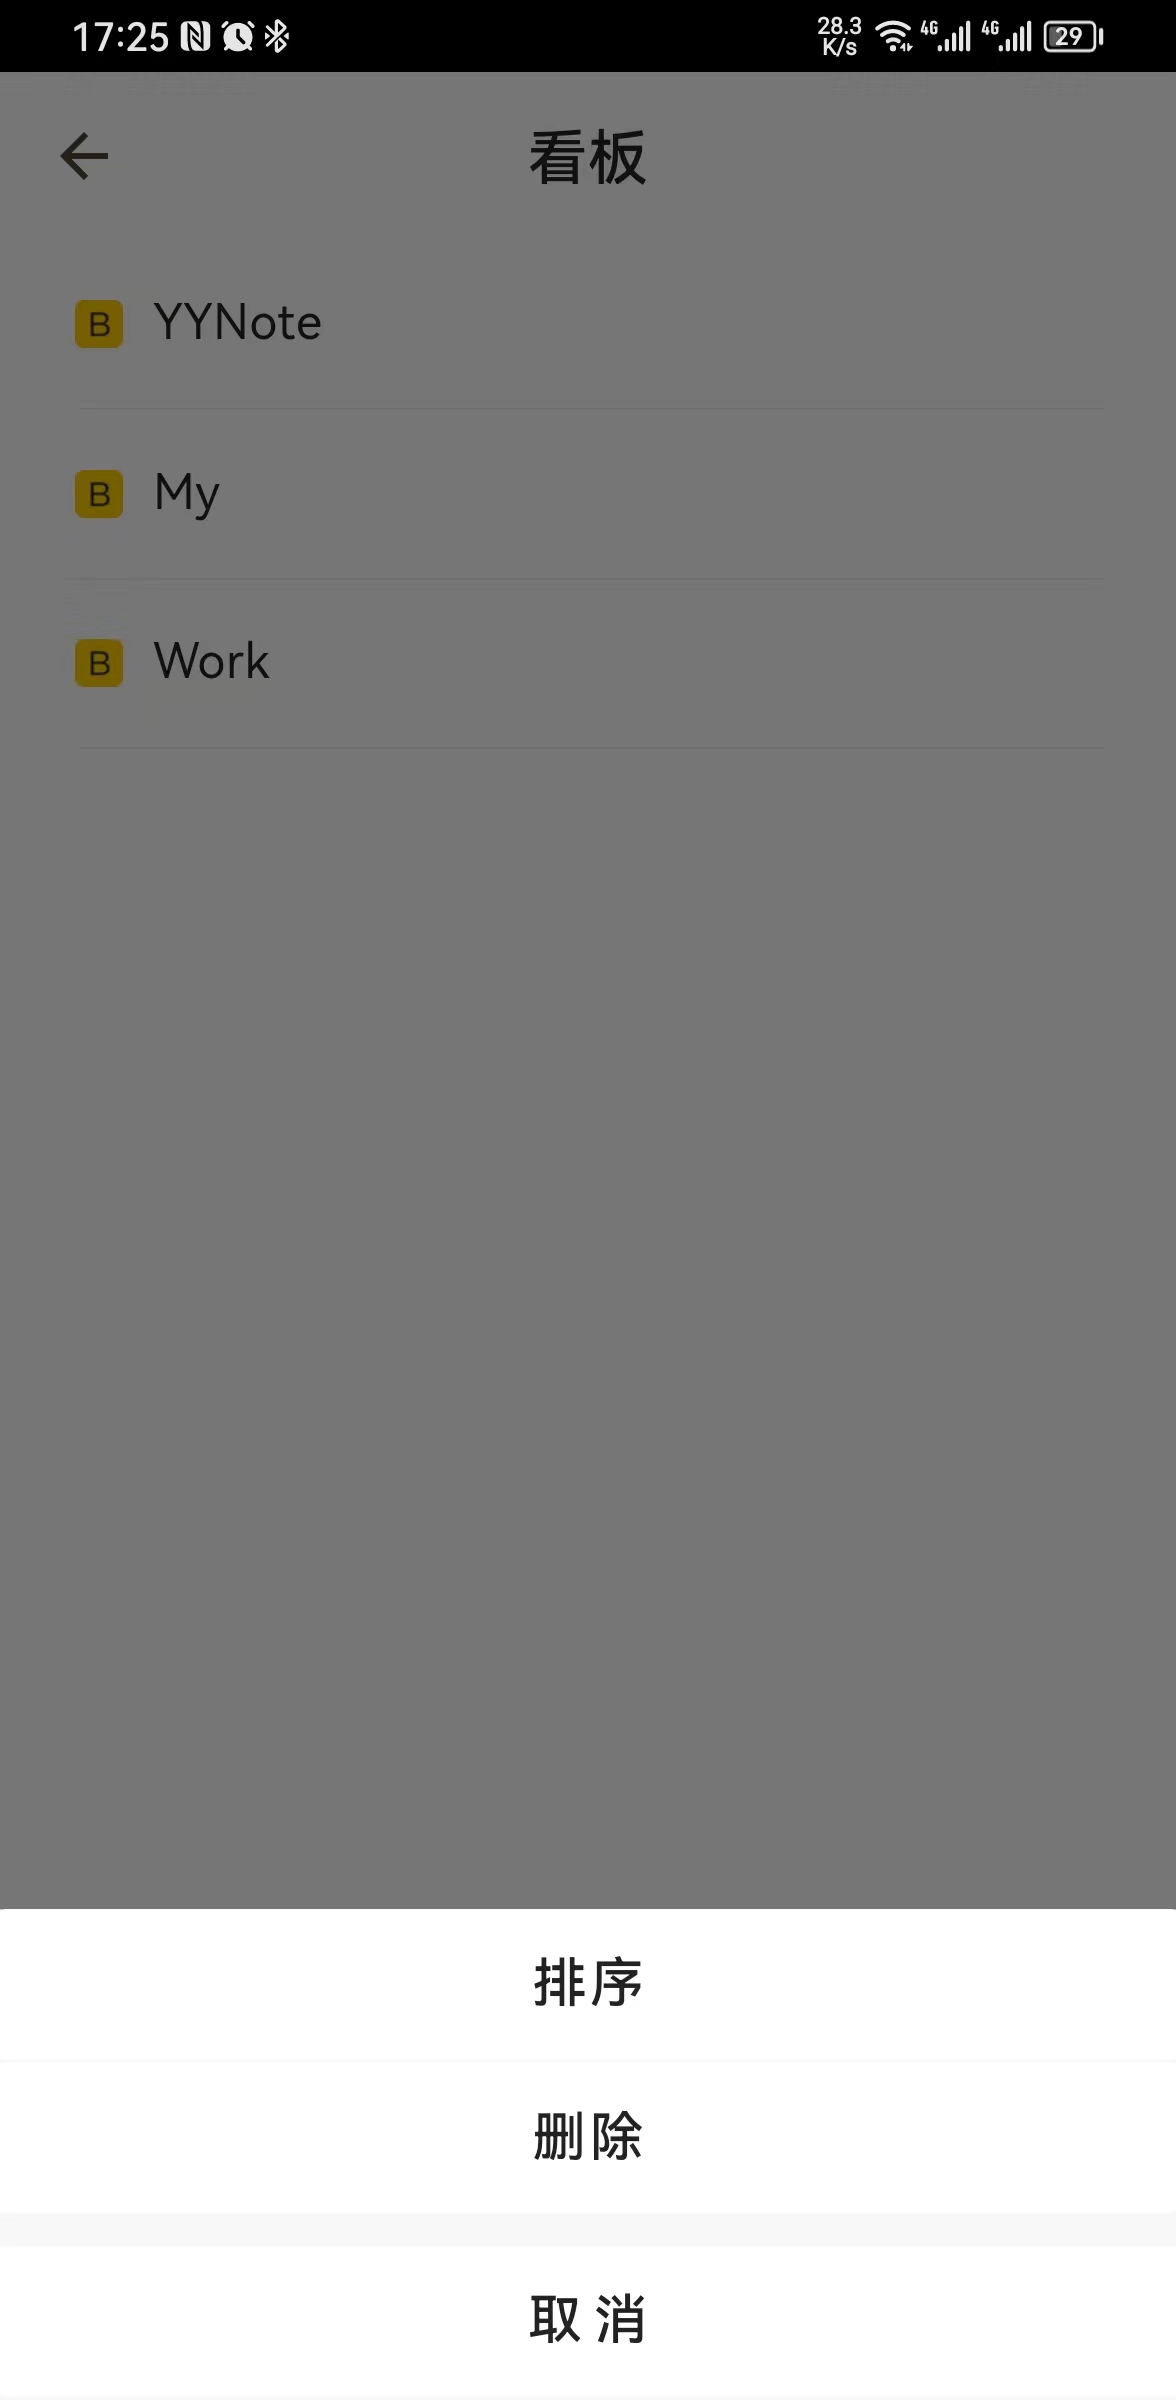 小黄条App使用向导插图1